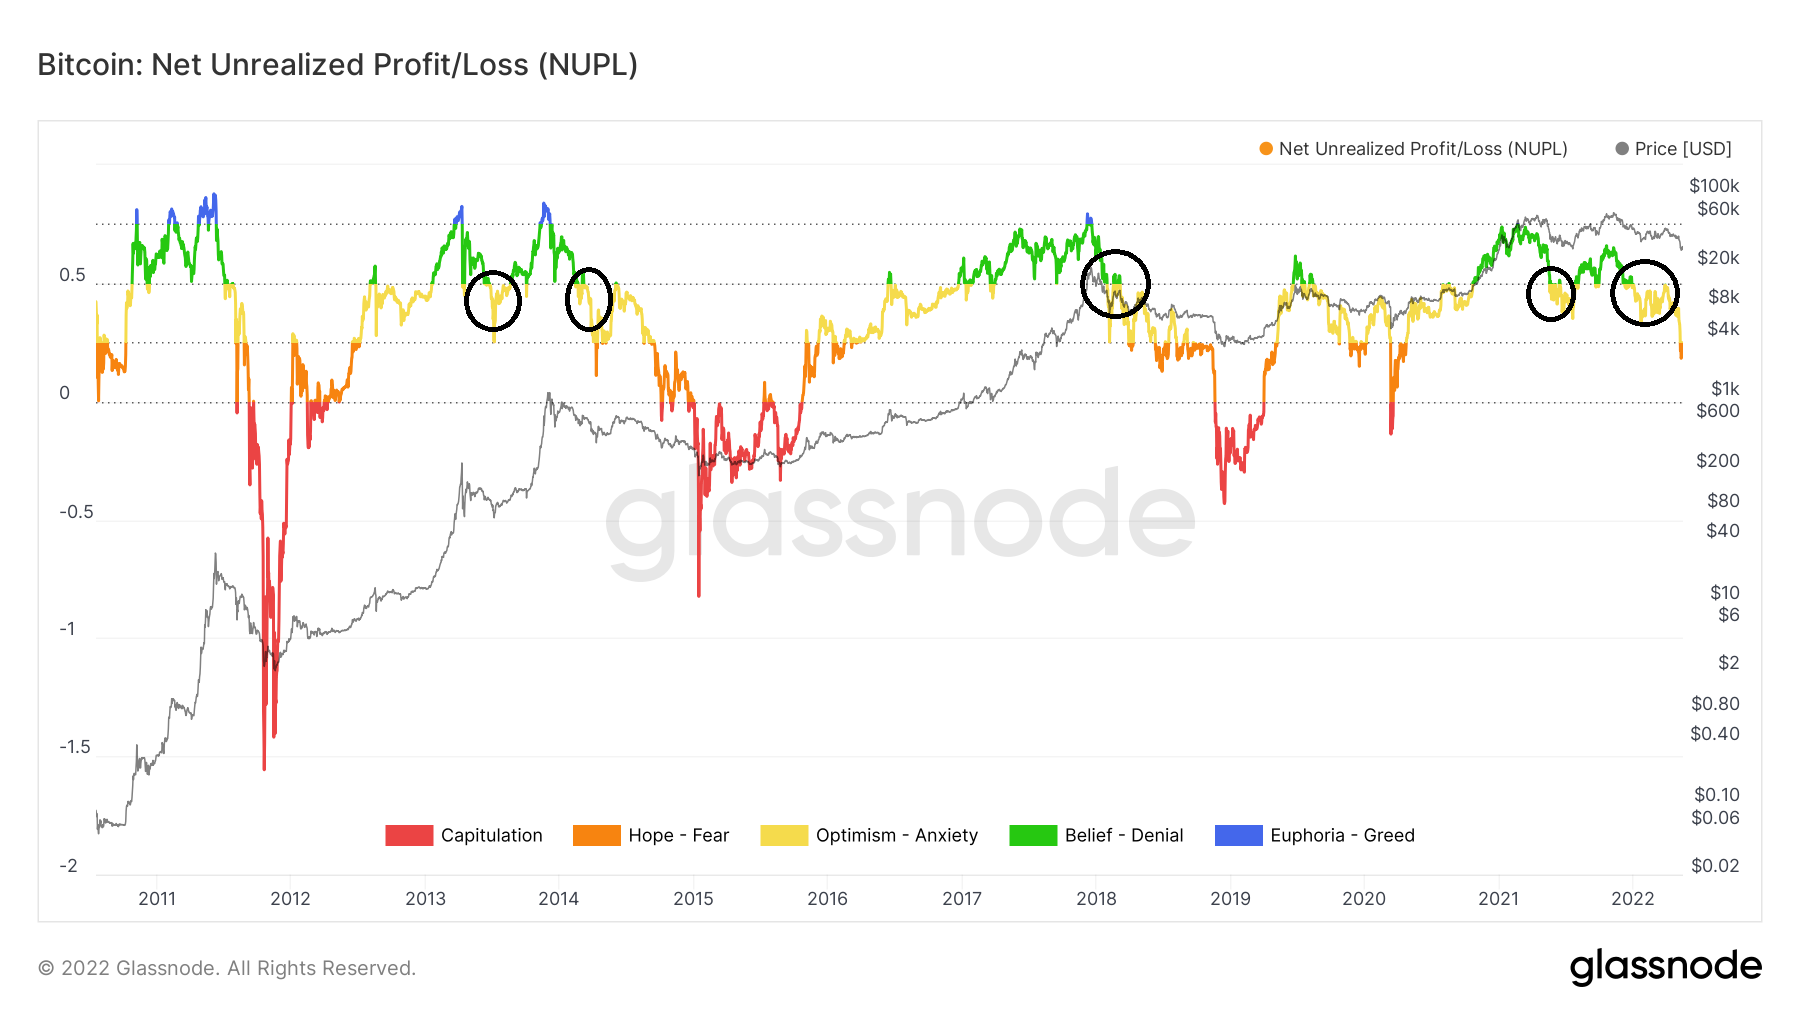 Bitcoin NUPL Chart 2011-2022 Glassnode